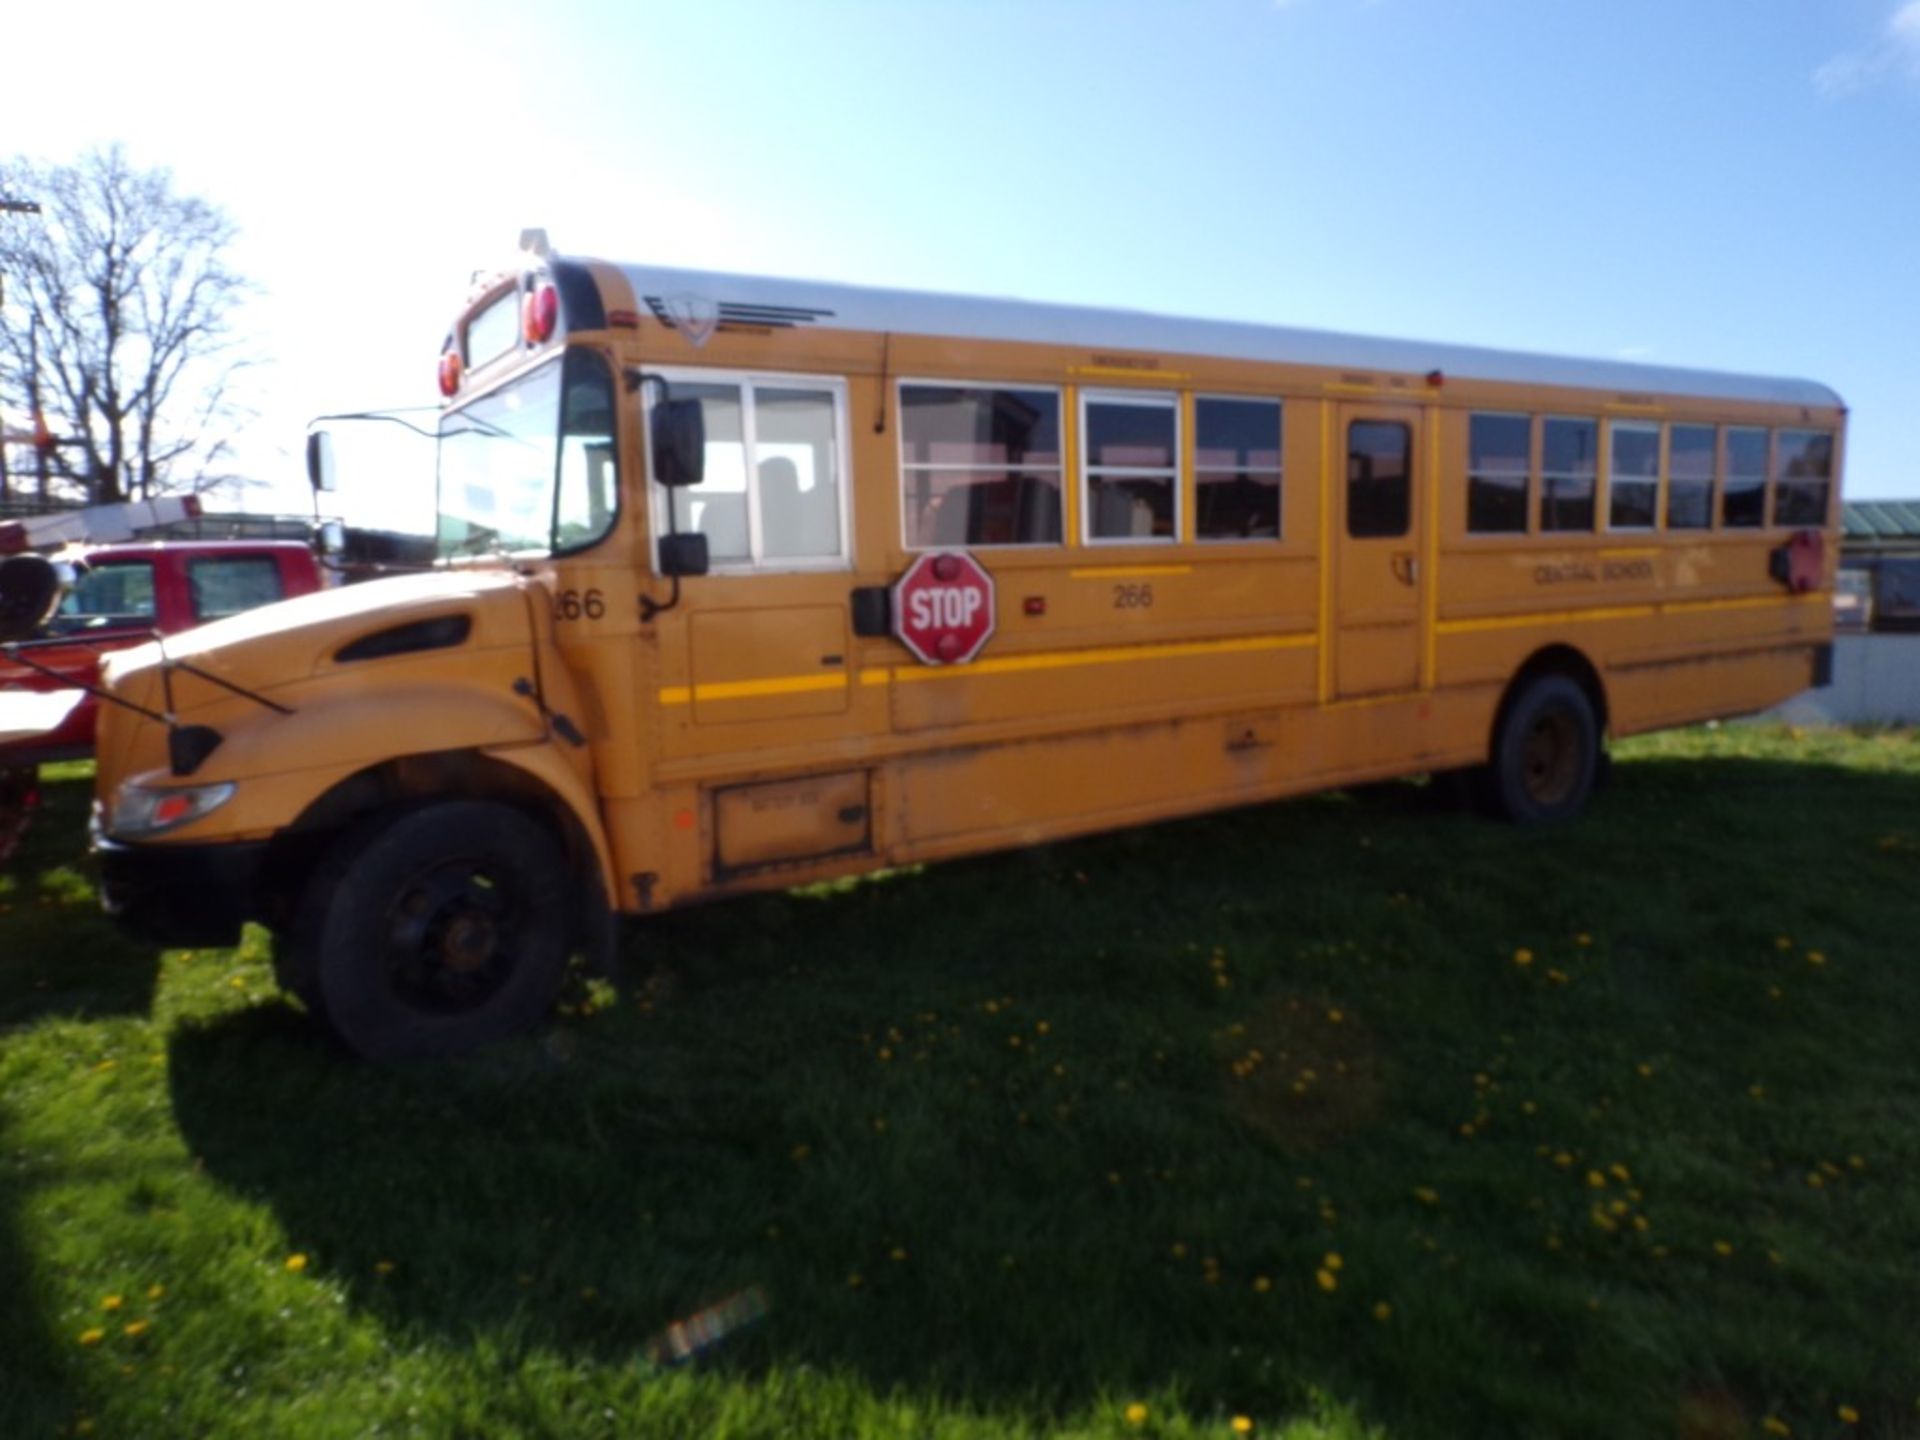 2014 International 66 Seat School Bus, Maxx Force Diesel, #266, 139,130 Miles, Vin #